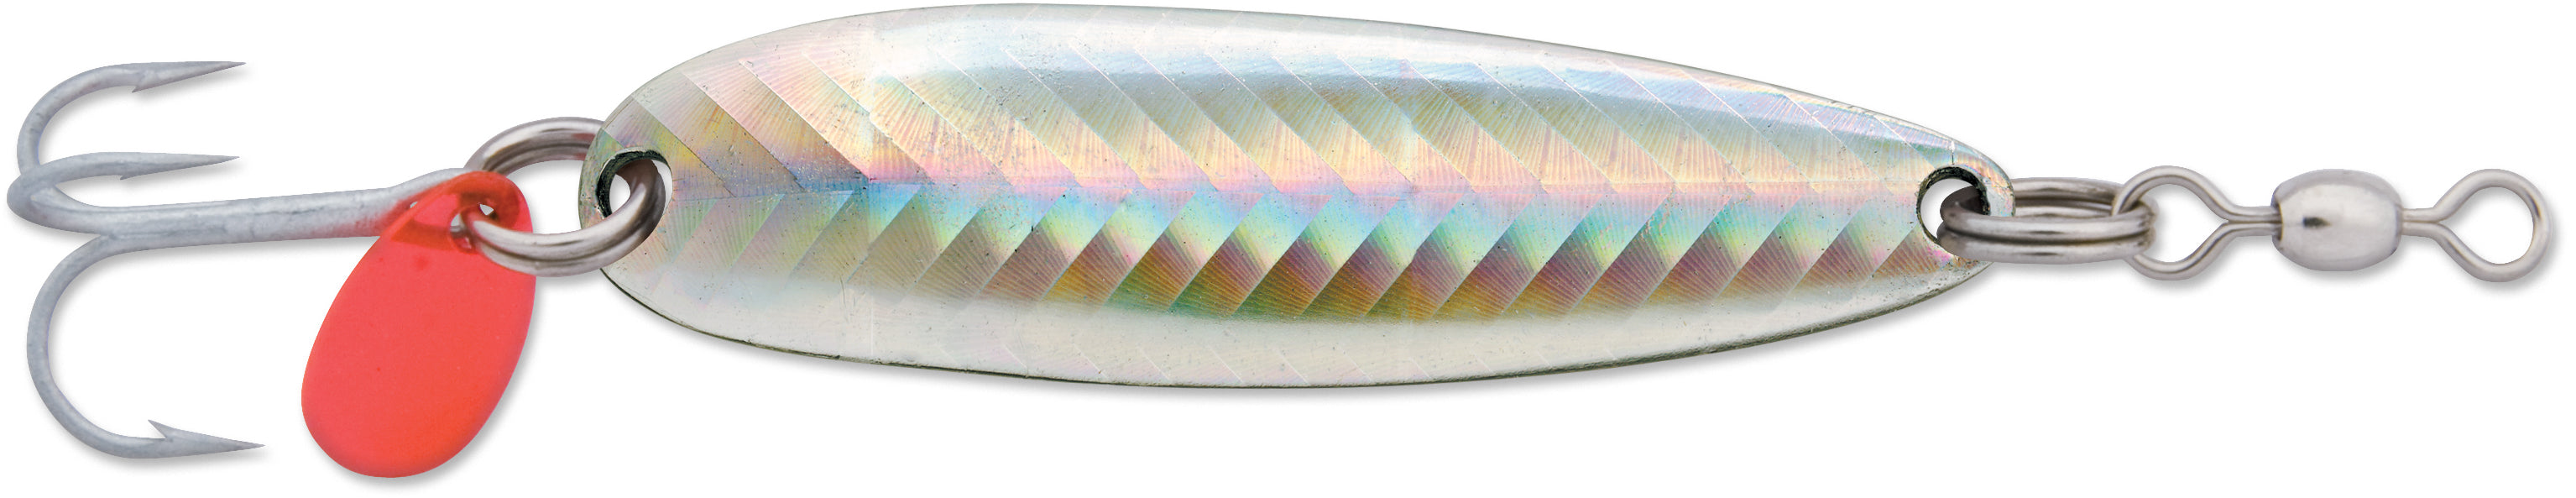 Luhr Jensen Krocodile Spoon - Pearl/Fish Scale 3/16oz - 1-9/16